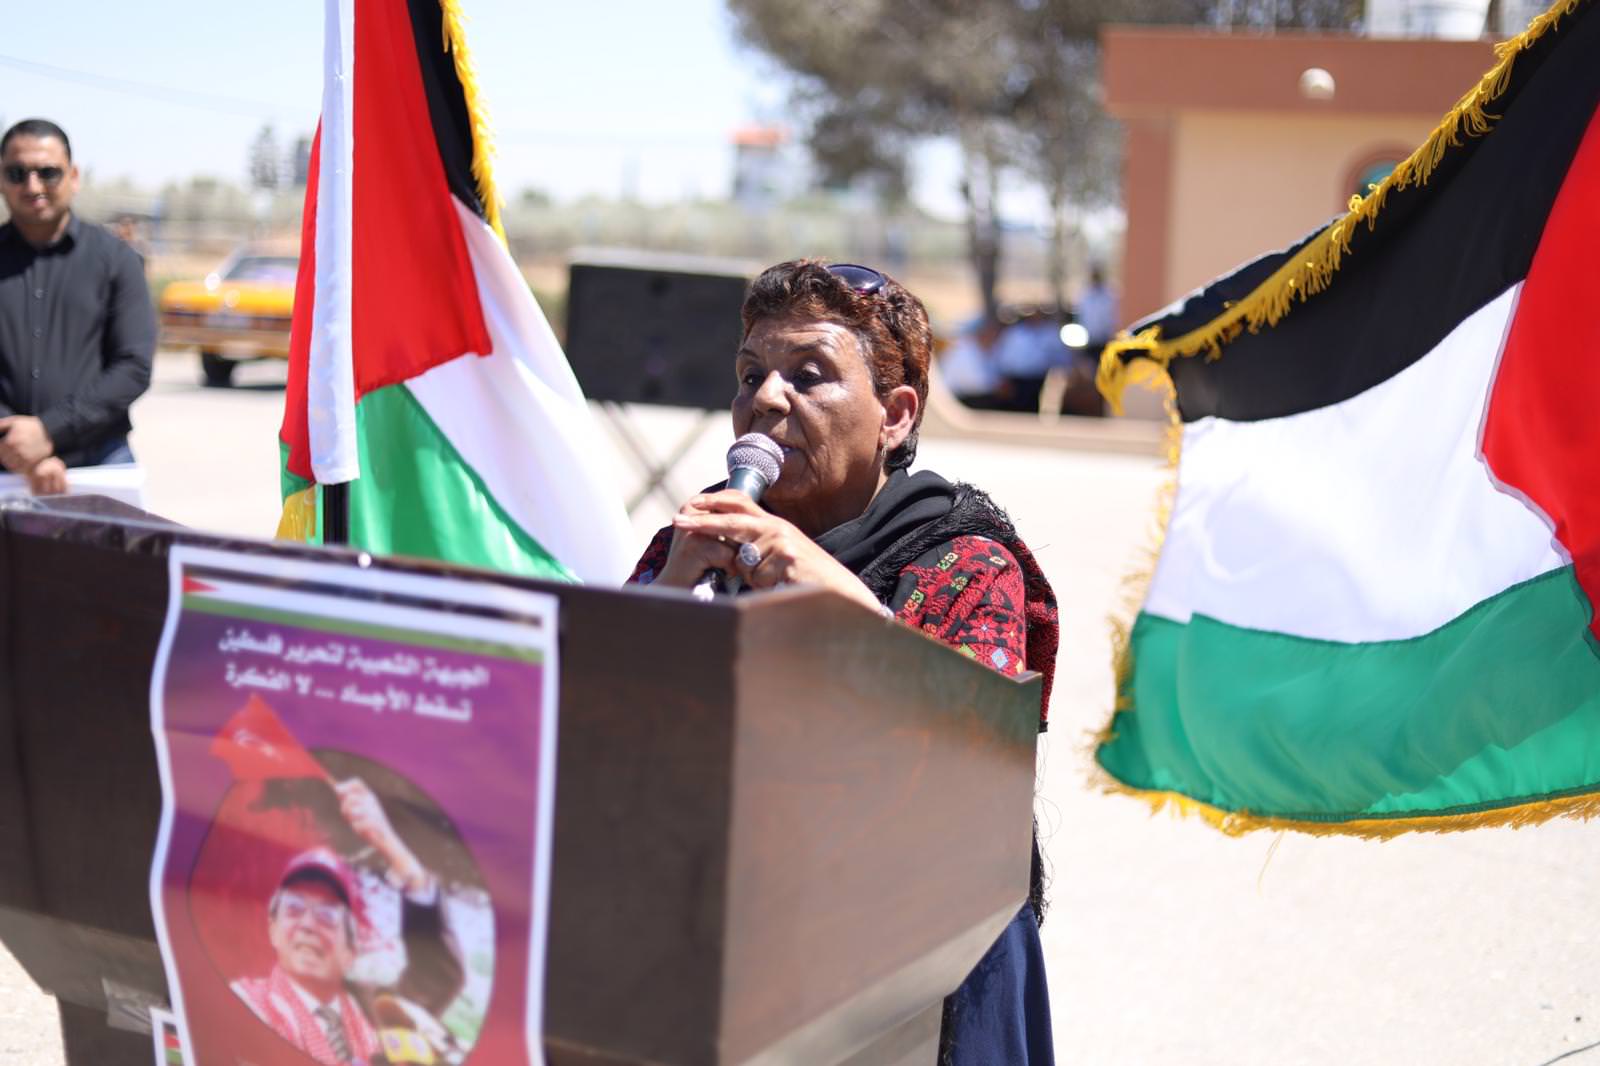 مراسم استقبال الجماهير الفلسطينية لجثمان القيادي رباح مهنا في غزة